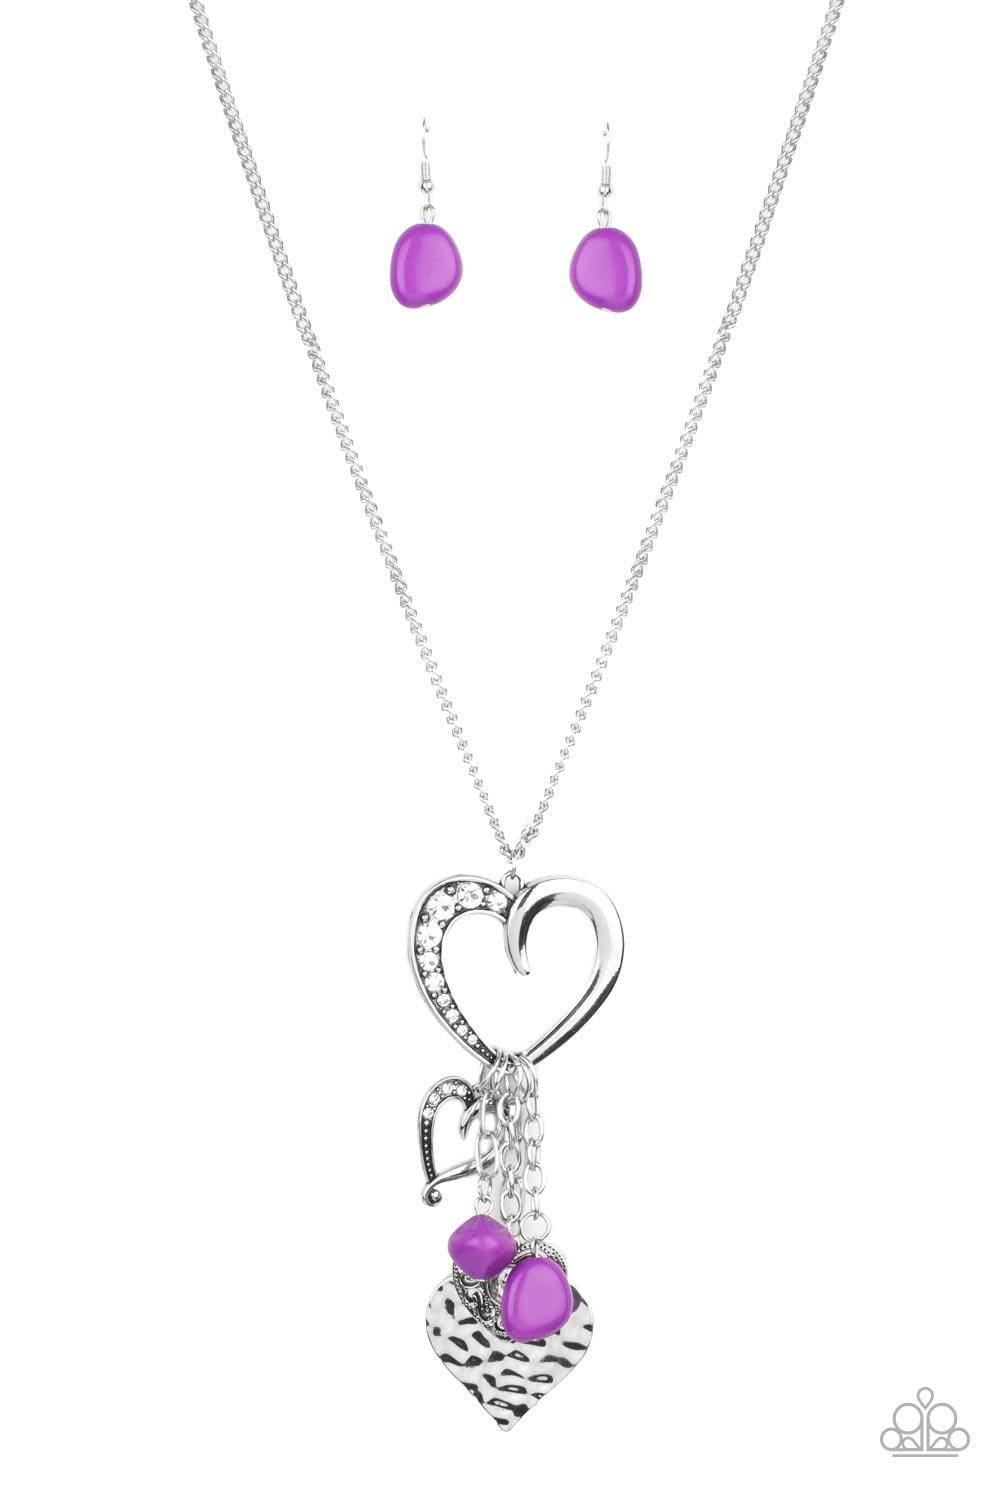 Paparazzi Accessories - Flirty Fashionista - Purple Necklace - Bling by JessieK